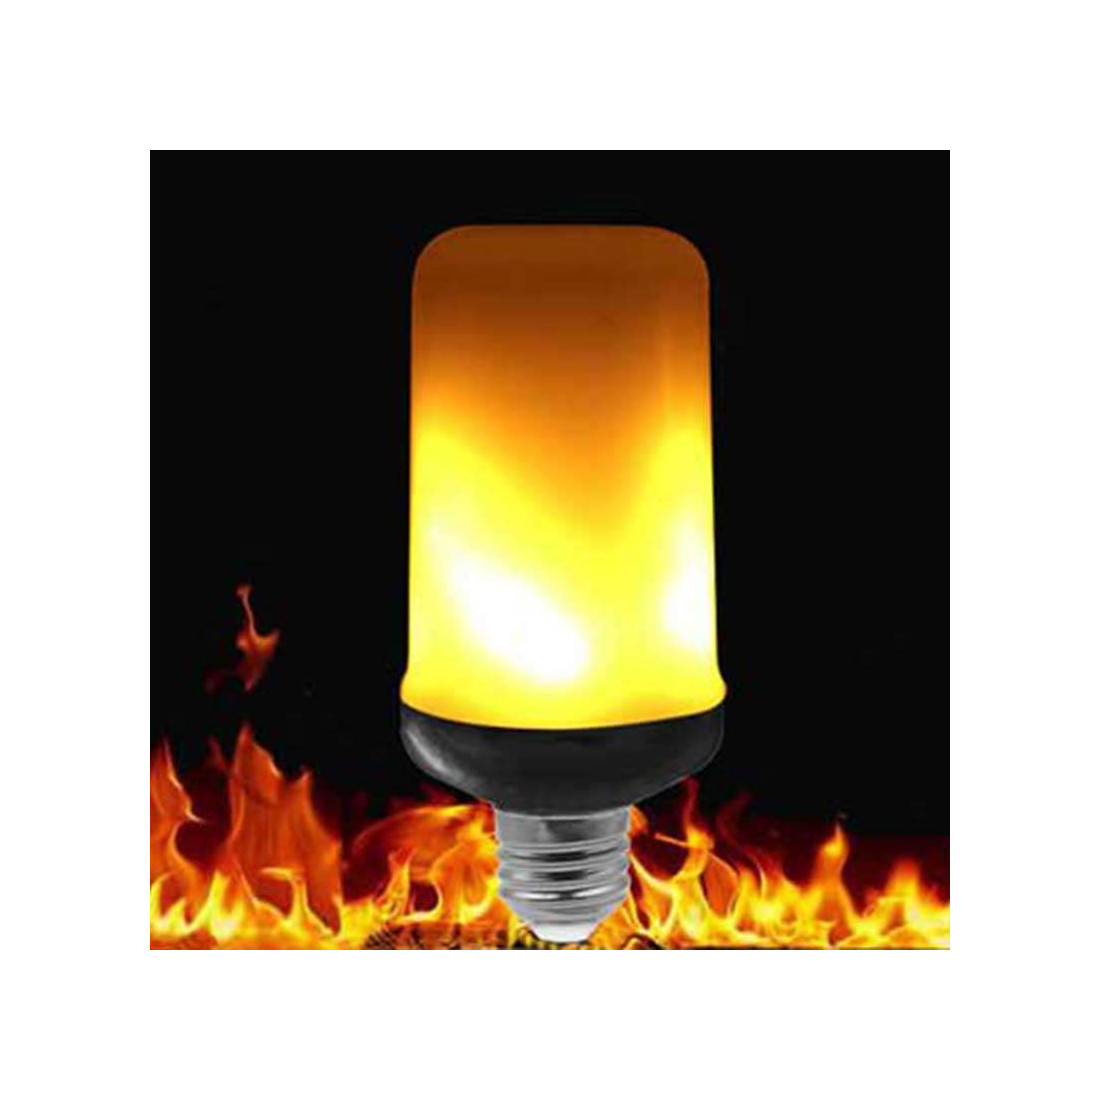 LED Ampoule Effet Flamme, 3 Modes E27 3W 1800K Avec Capteur Gravité,  Ampoules Flammes Vintage, Pour Ambiance Fête 4 Pack,Four modes,E27